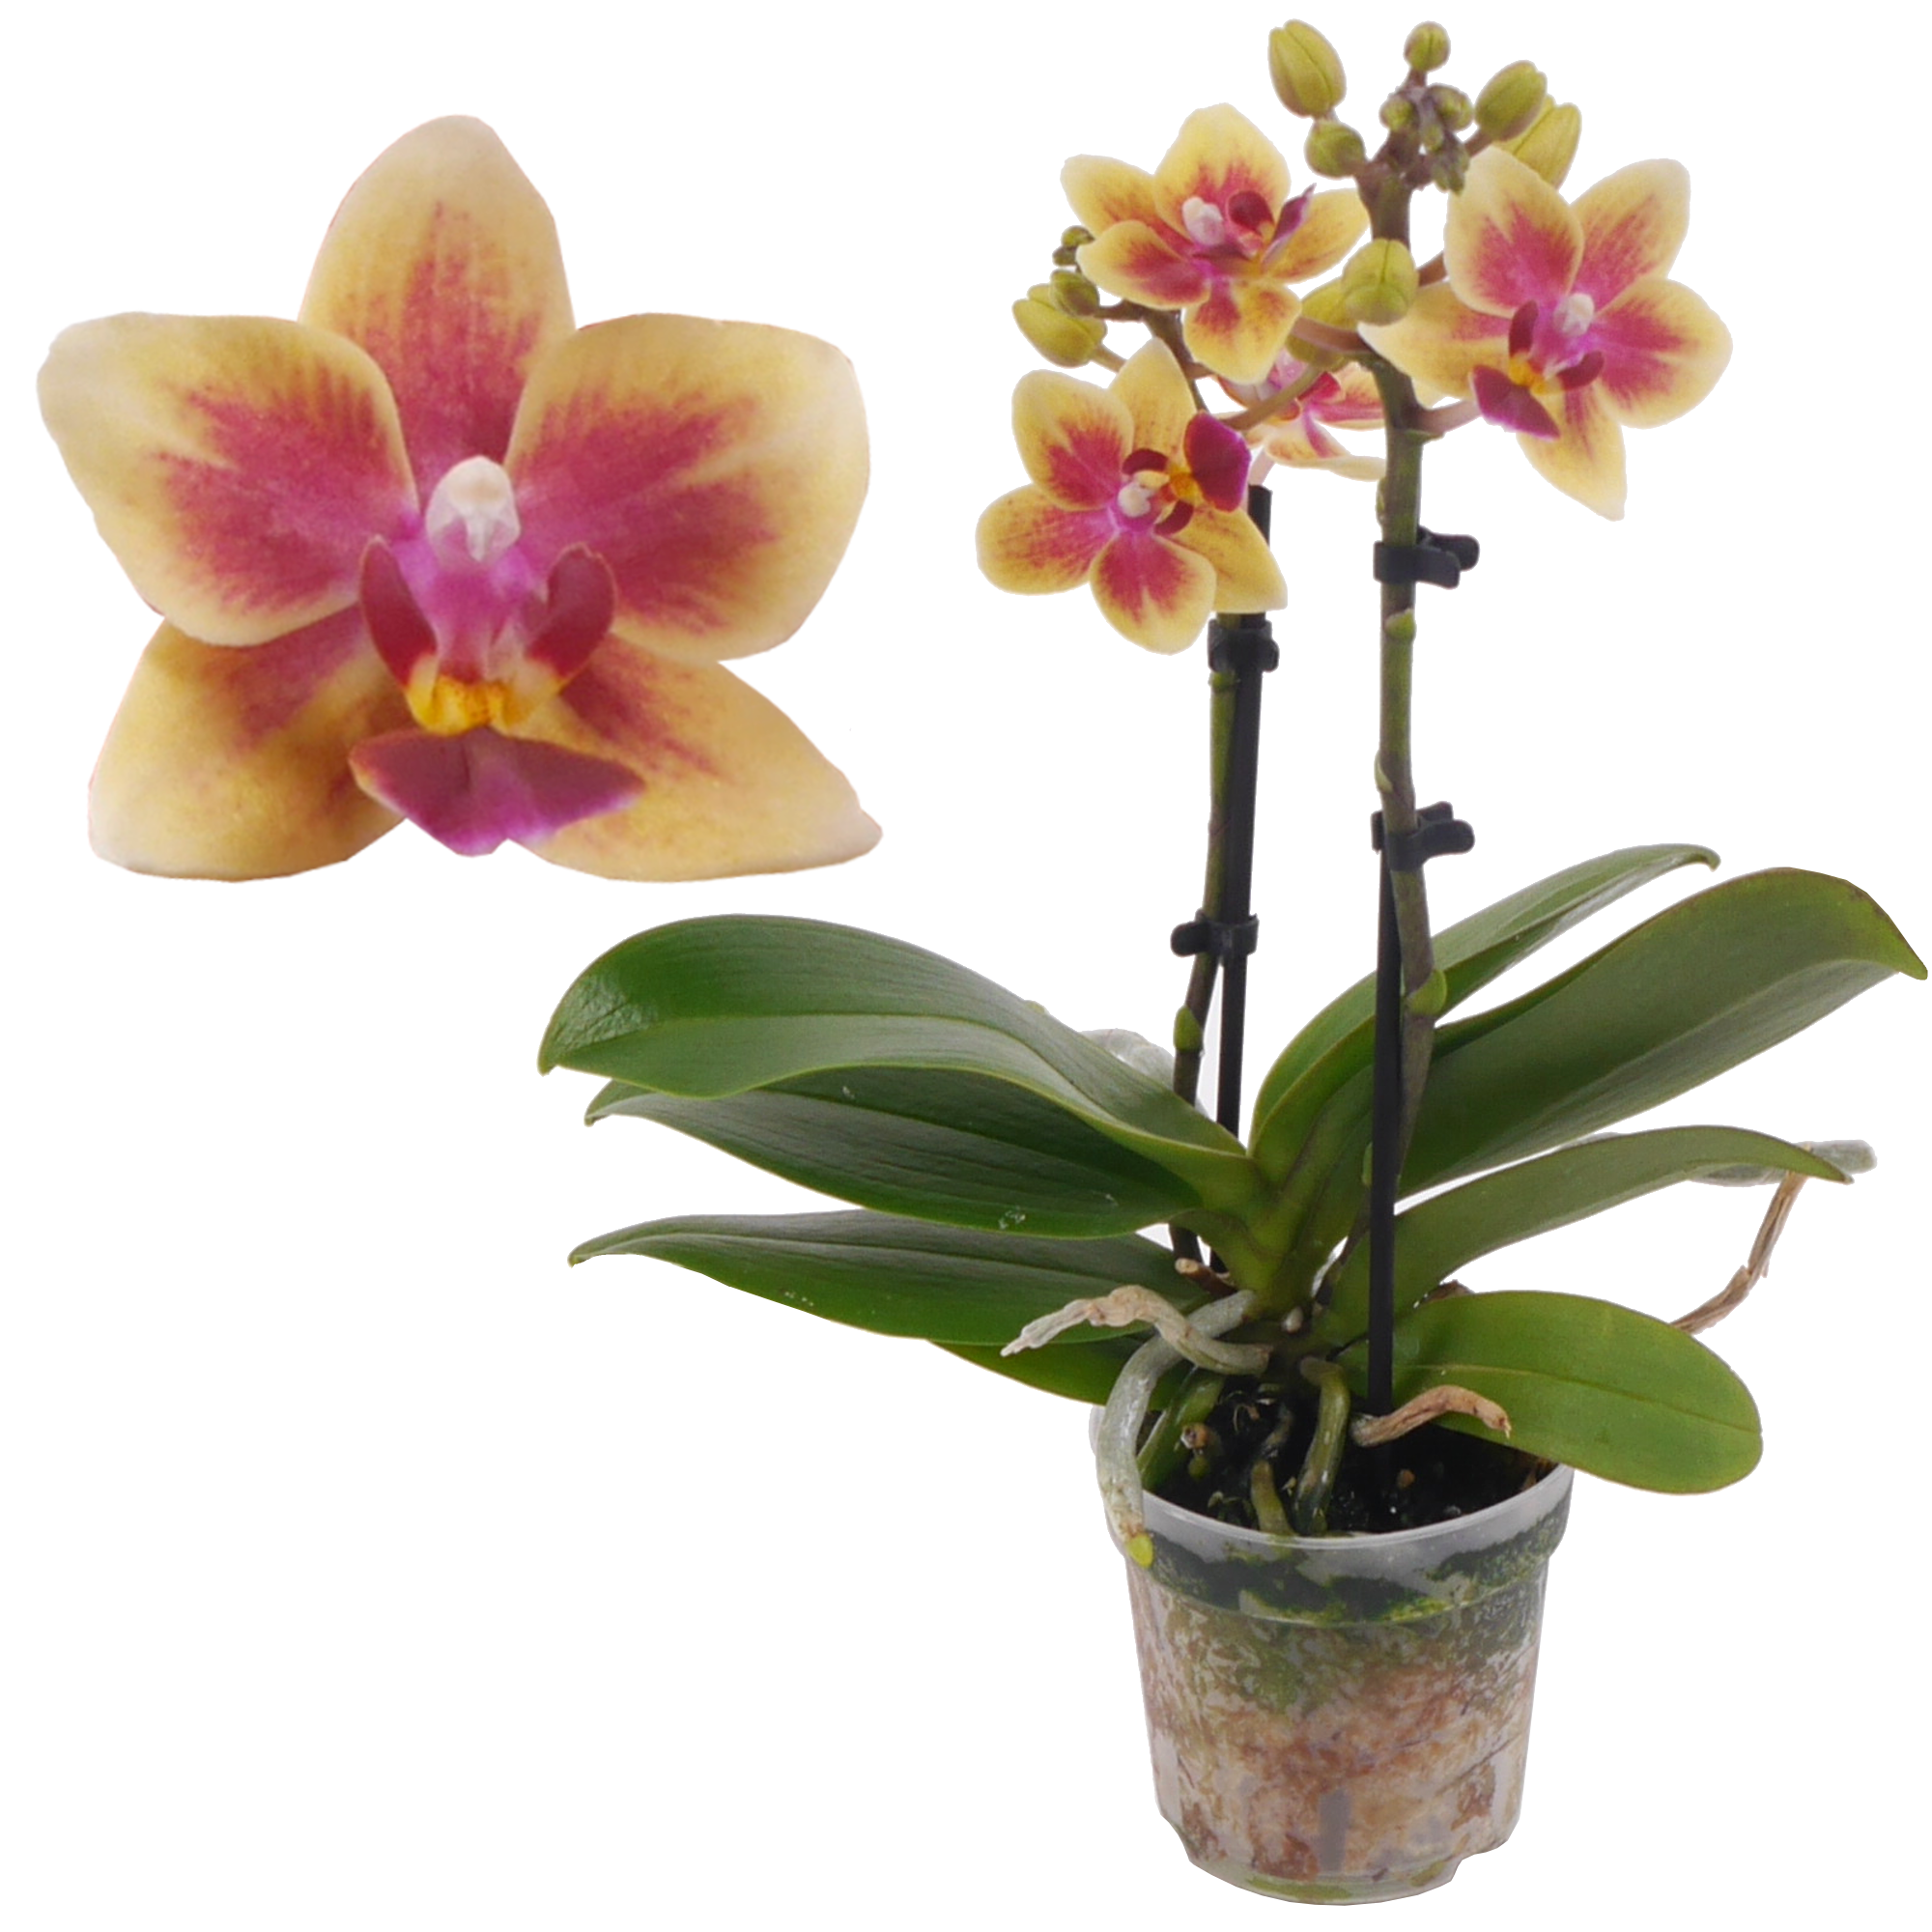 Schmetterlingsorchidee 2 Rispen 'Tess' gelb/pink 7 cm Topf + product picture